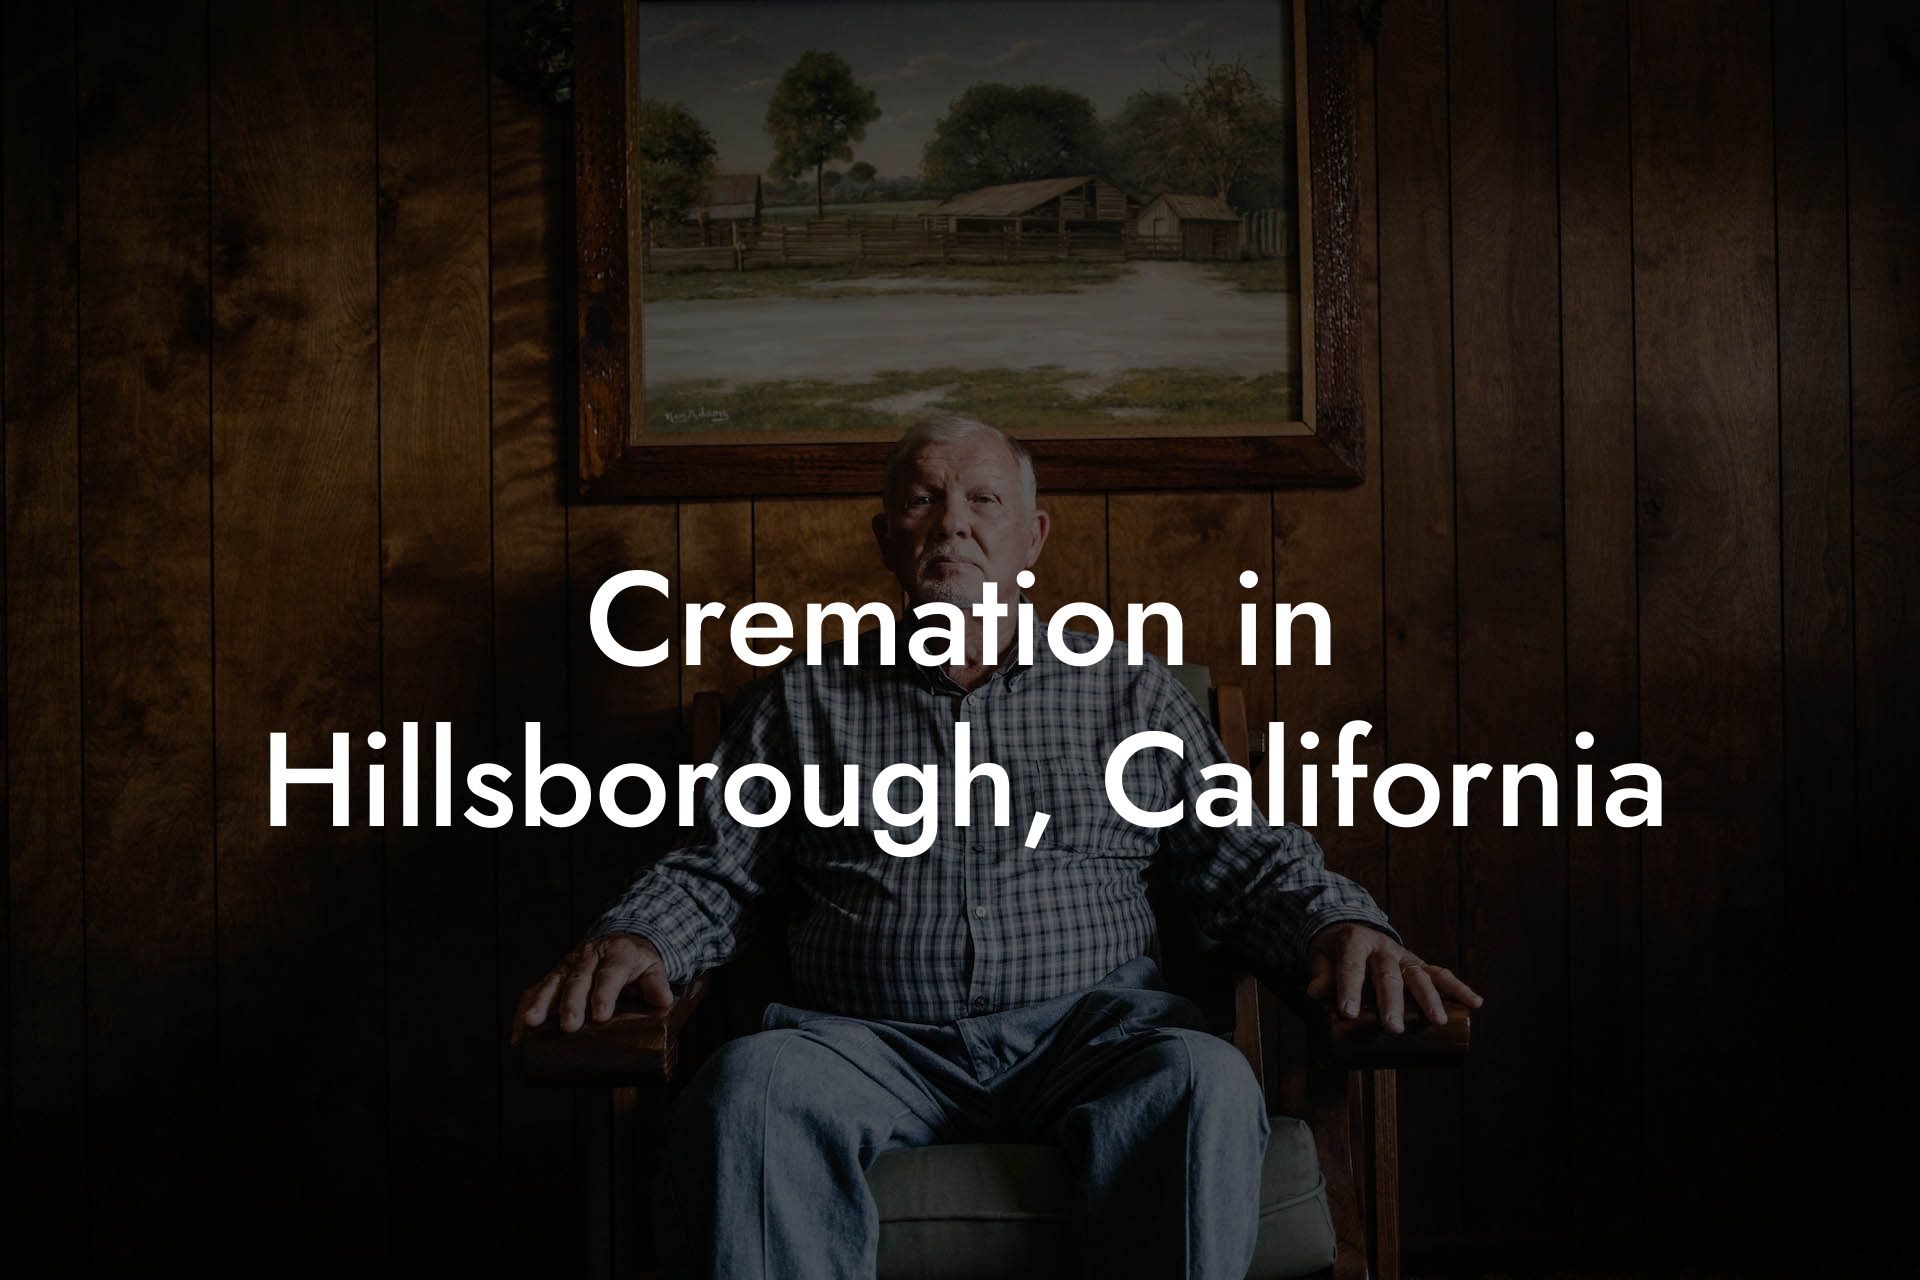 Cremation in Hillsborough, California